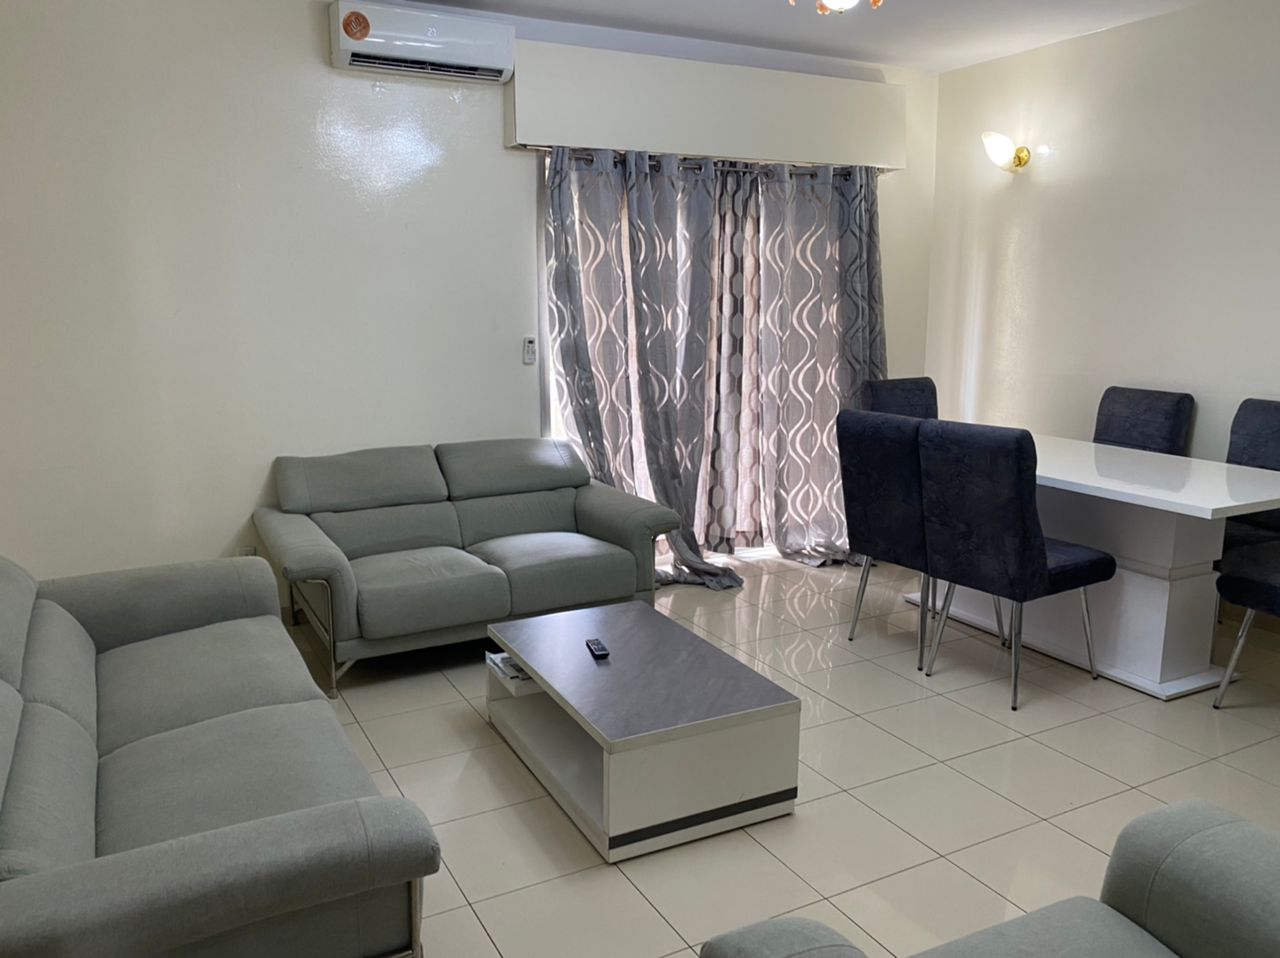 Appartement meublé climatisé situé au cœur du plateau de Dakar, OUAKAM